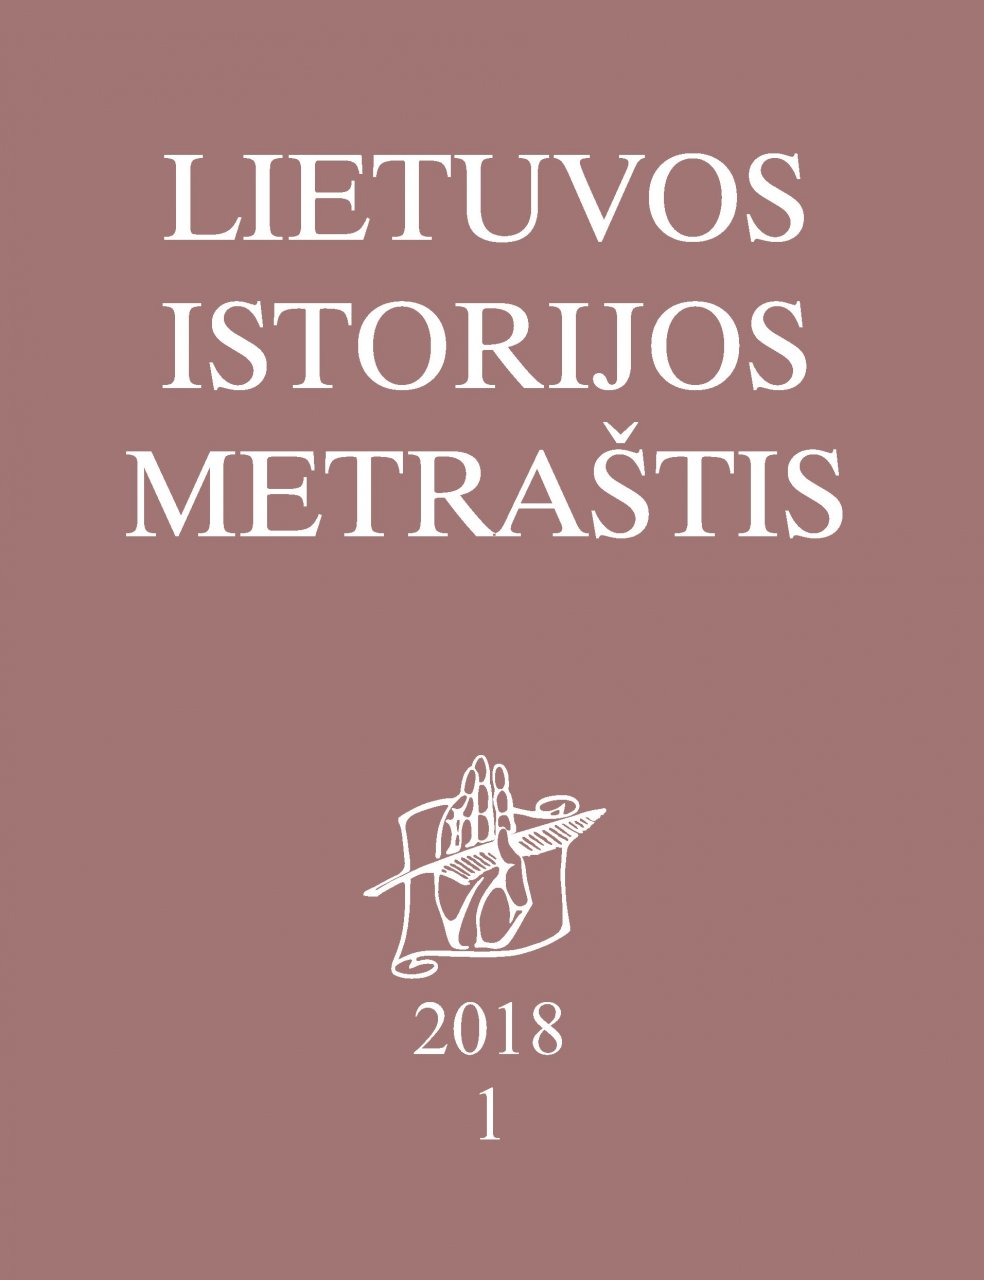 Lietuvos istorijos metraštis 2018 metai 1